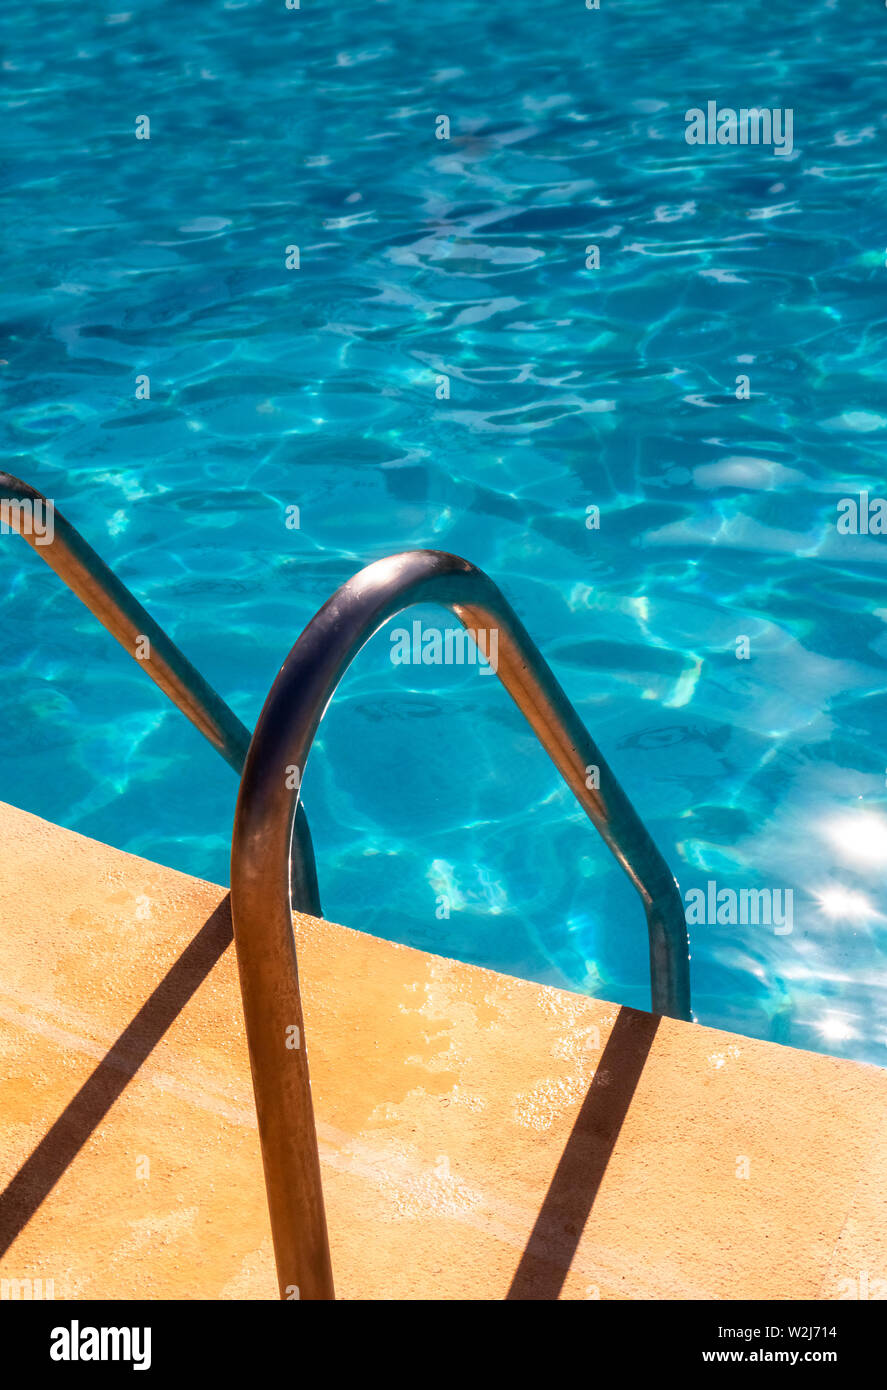 Entrata in piscina con maniglie Foto Stock